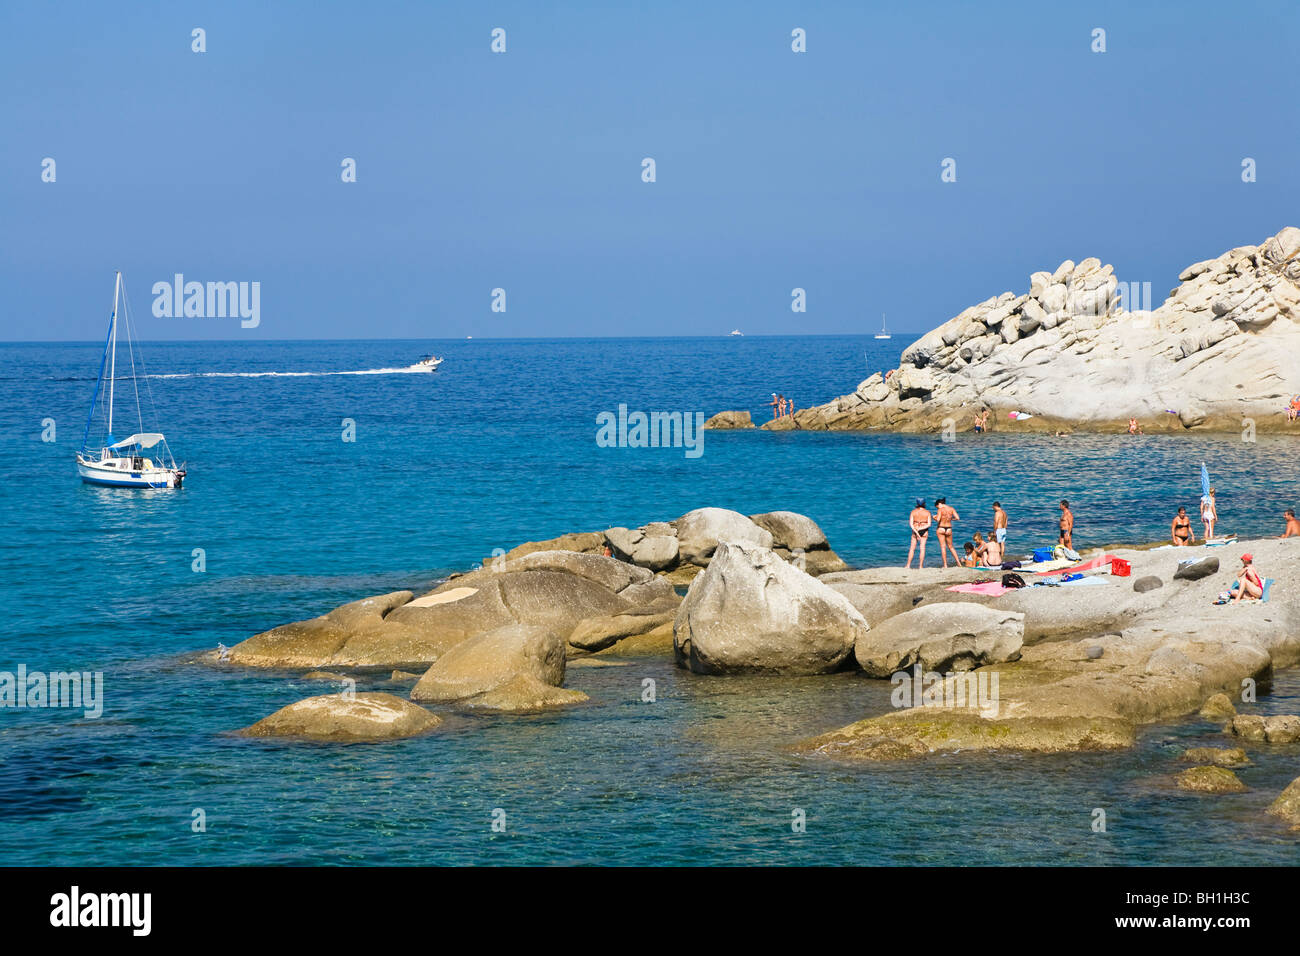 Beach at Sant' Andrea, Elba, Italy Stock Photo